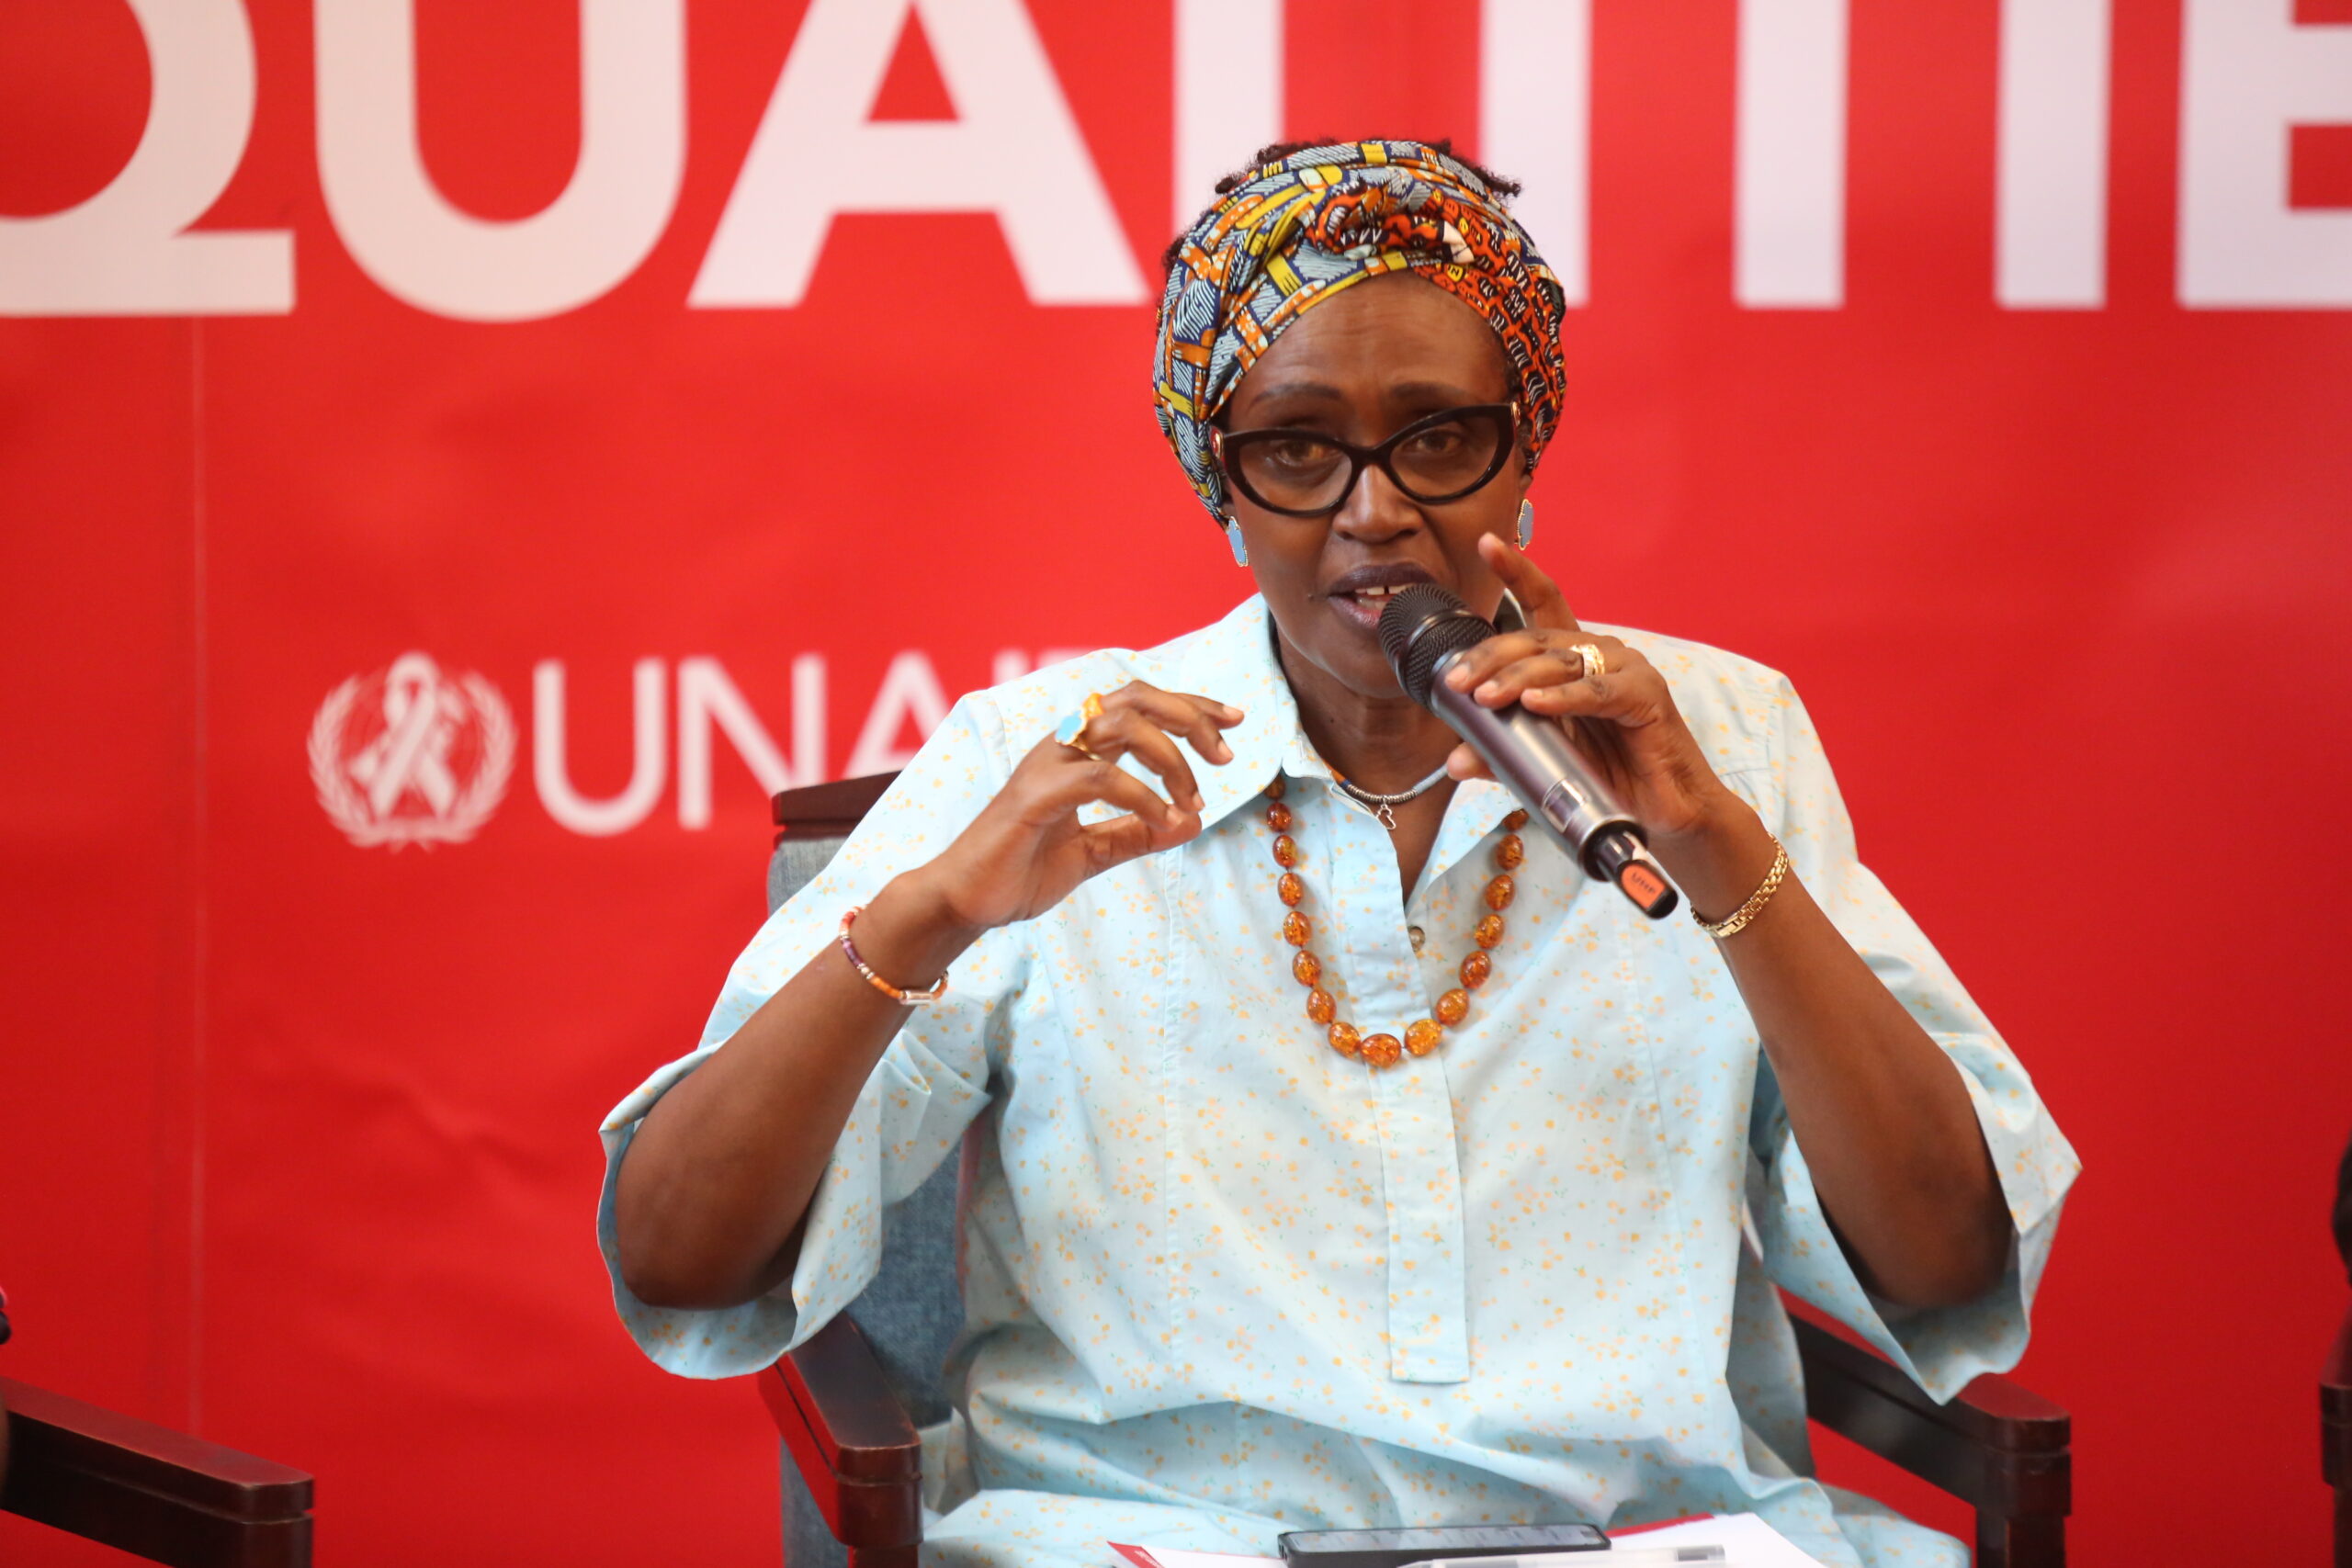 DAR ES SALAAM, Winnie Byanyima, Direktur Eksekutif Program Bersama Perserikatan Bangsa-Bangsa untuk Penanganan HIV/AIDS (UNAIDS), berbicara dalam sebuah konferensi di Dar es Salaam, Tanzania, pada 29 November 2022. (Xinhua/Herman Emmanuel)